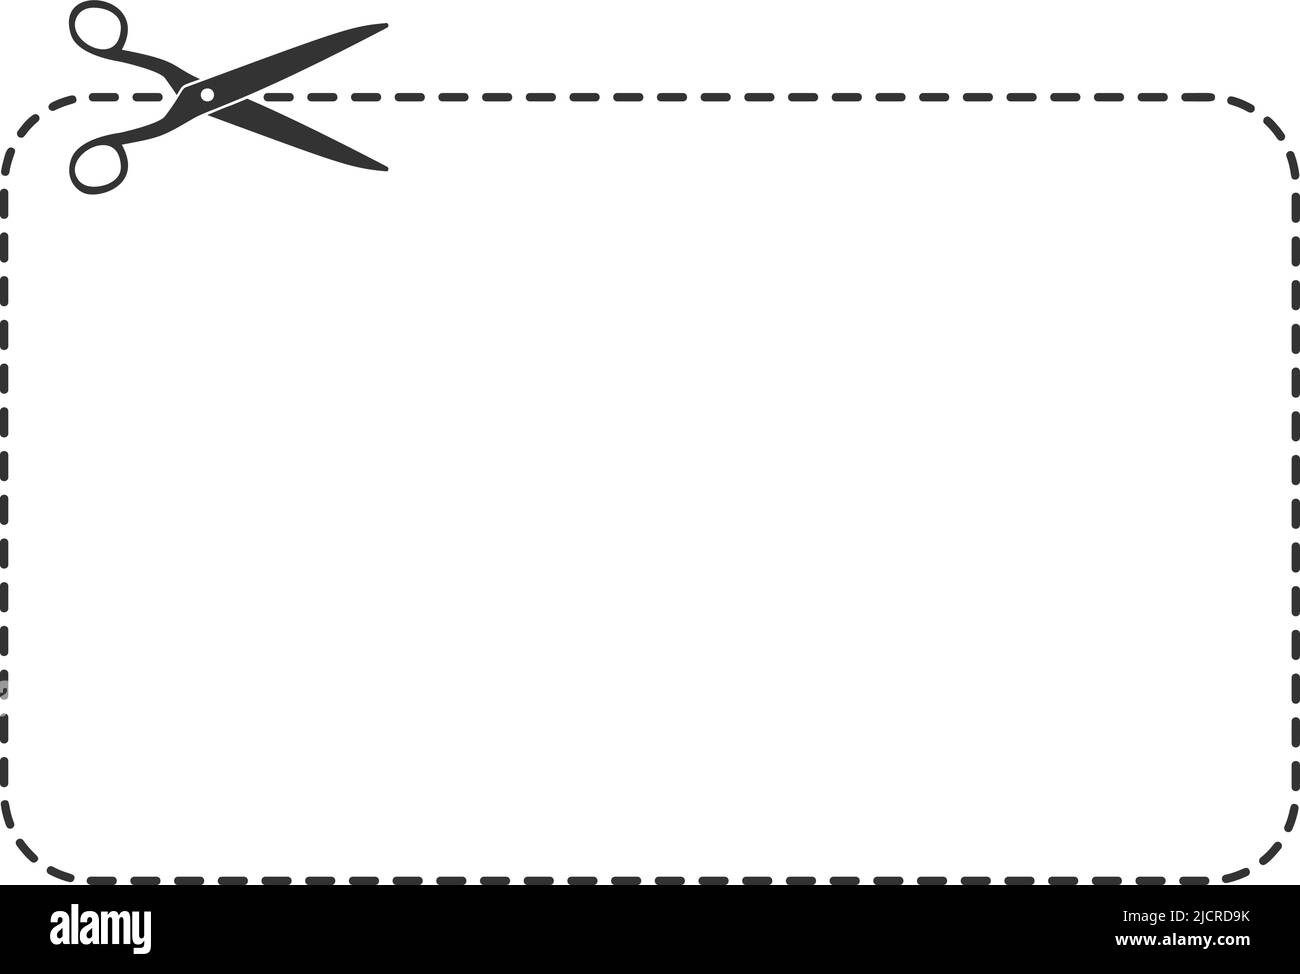 Gestrichelte Linie mit Schere ausschneiden, Coupon Rand Vorlage Vektor-Illustration Stock Vektor